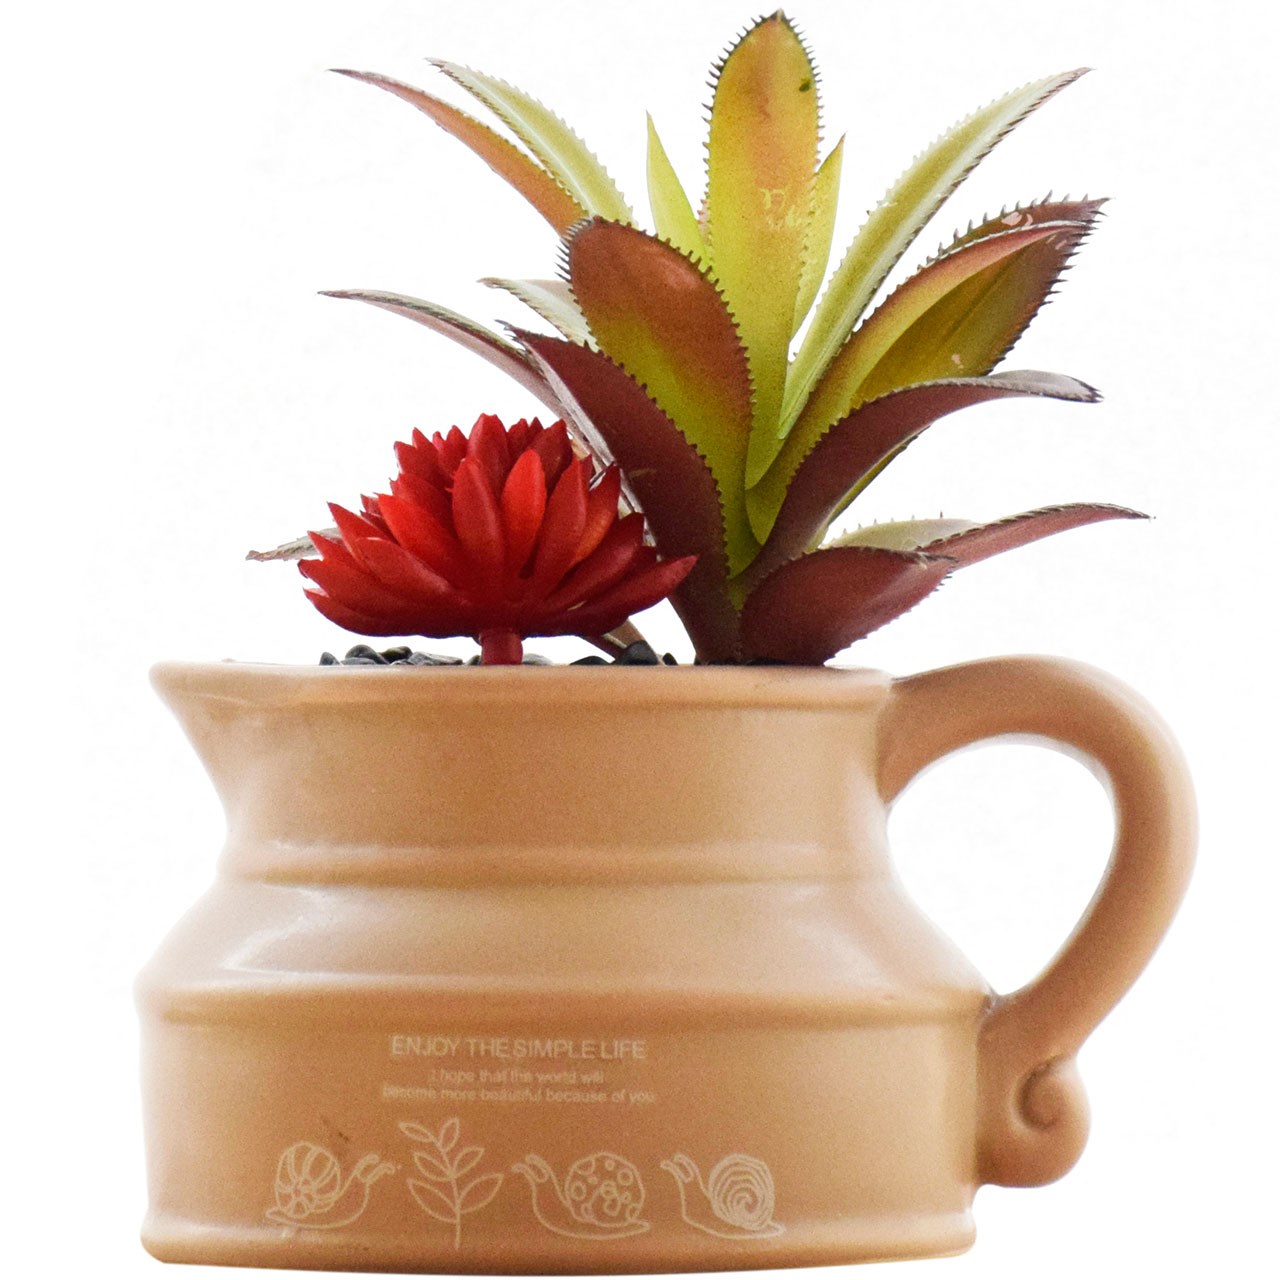 گلدان به همراه گل مصنوعی آناترا مدل Cactus 01